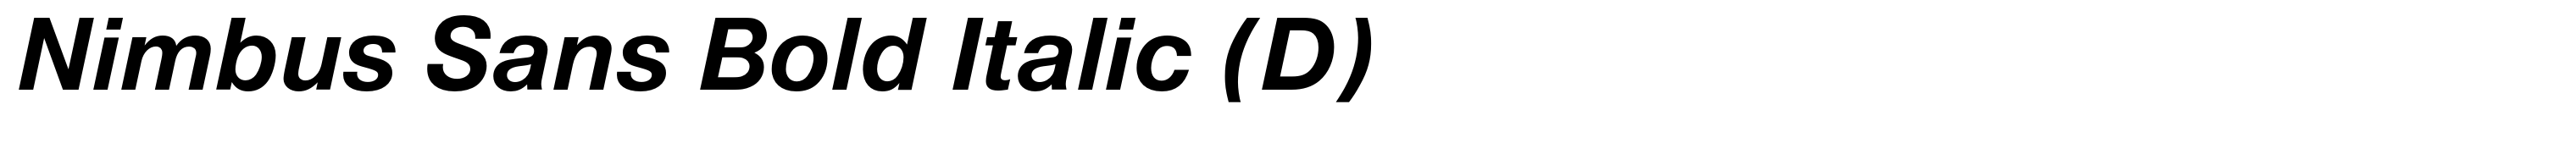 Nimbus Sans Bold Italic (D)